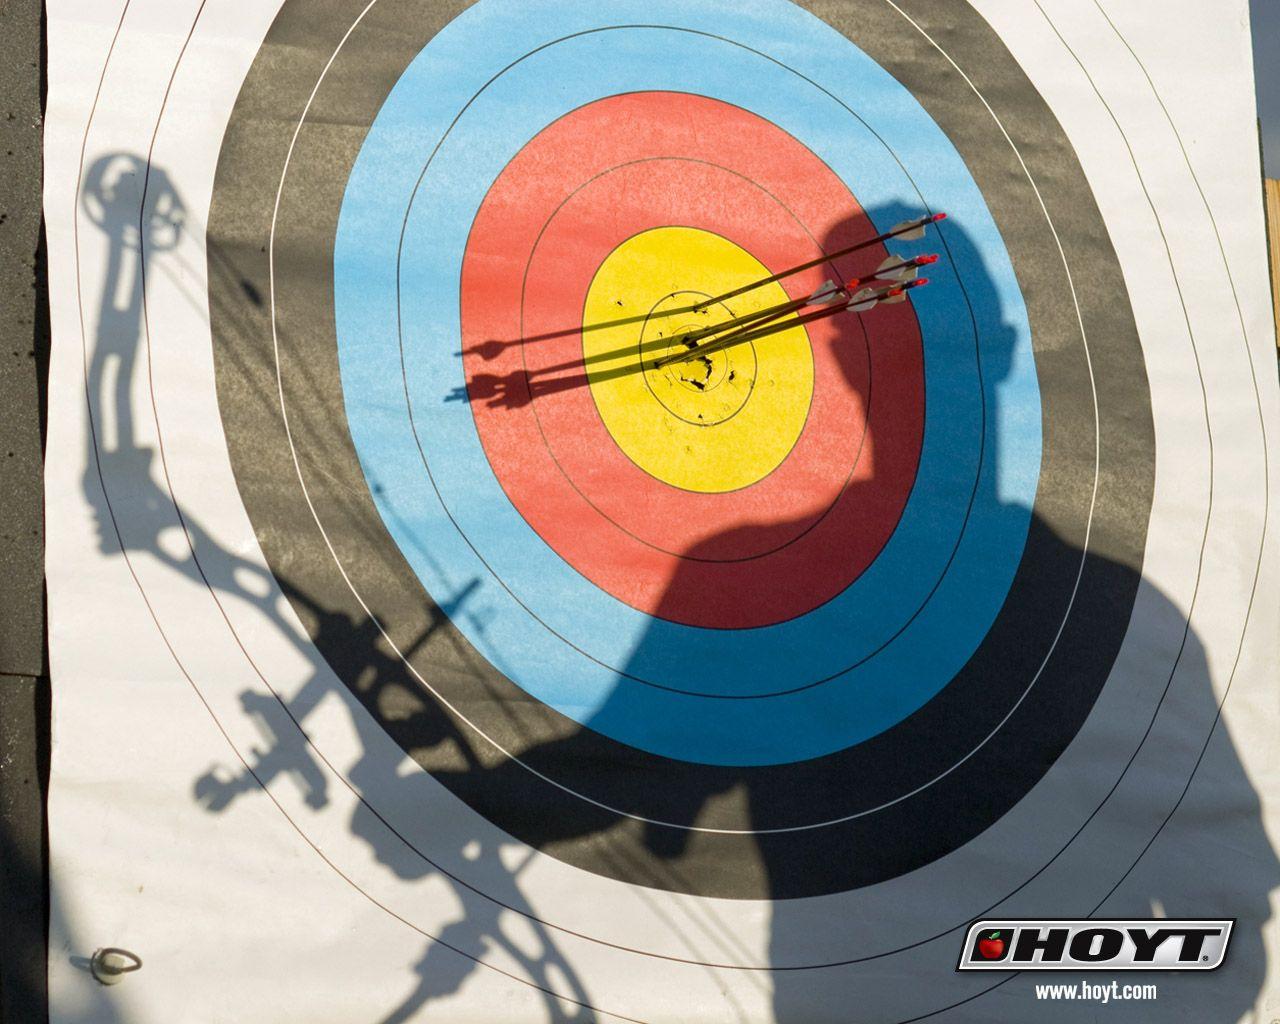 Hoyt Archery wallpaper